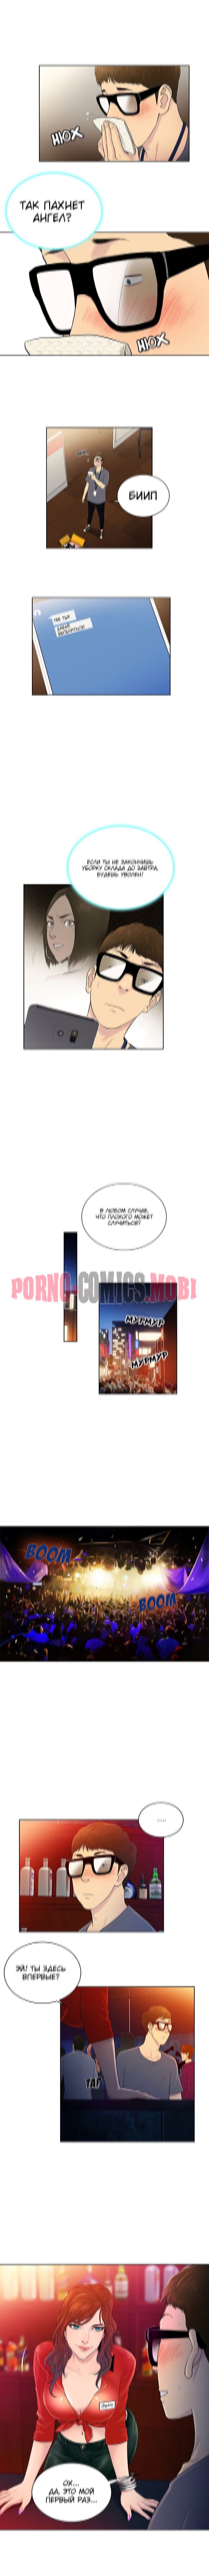 Порно Комикс Стойкий парень смотреть бесплатно онлайн